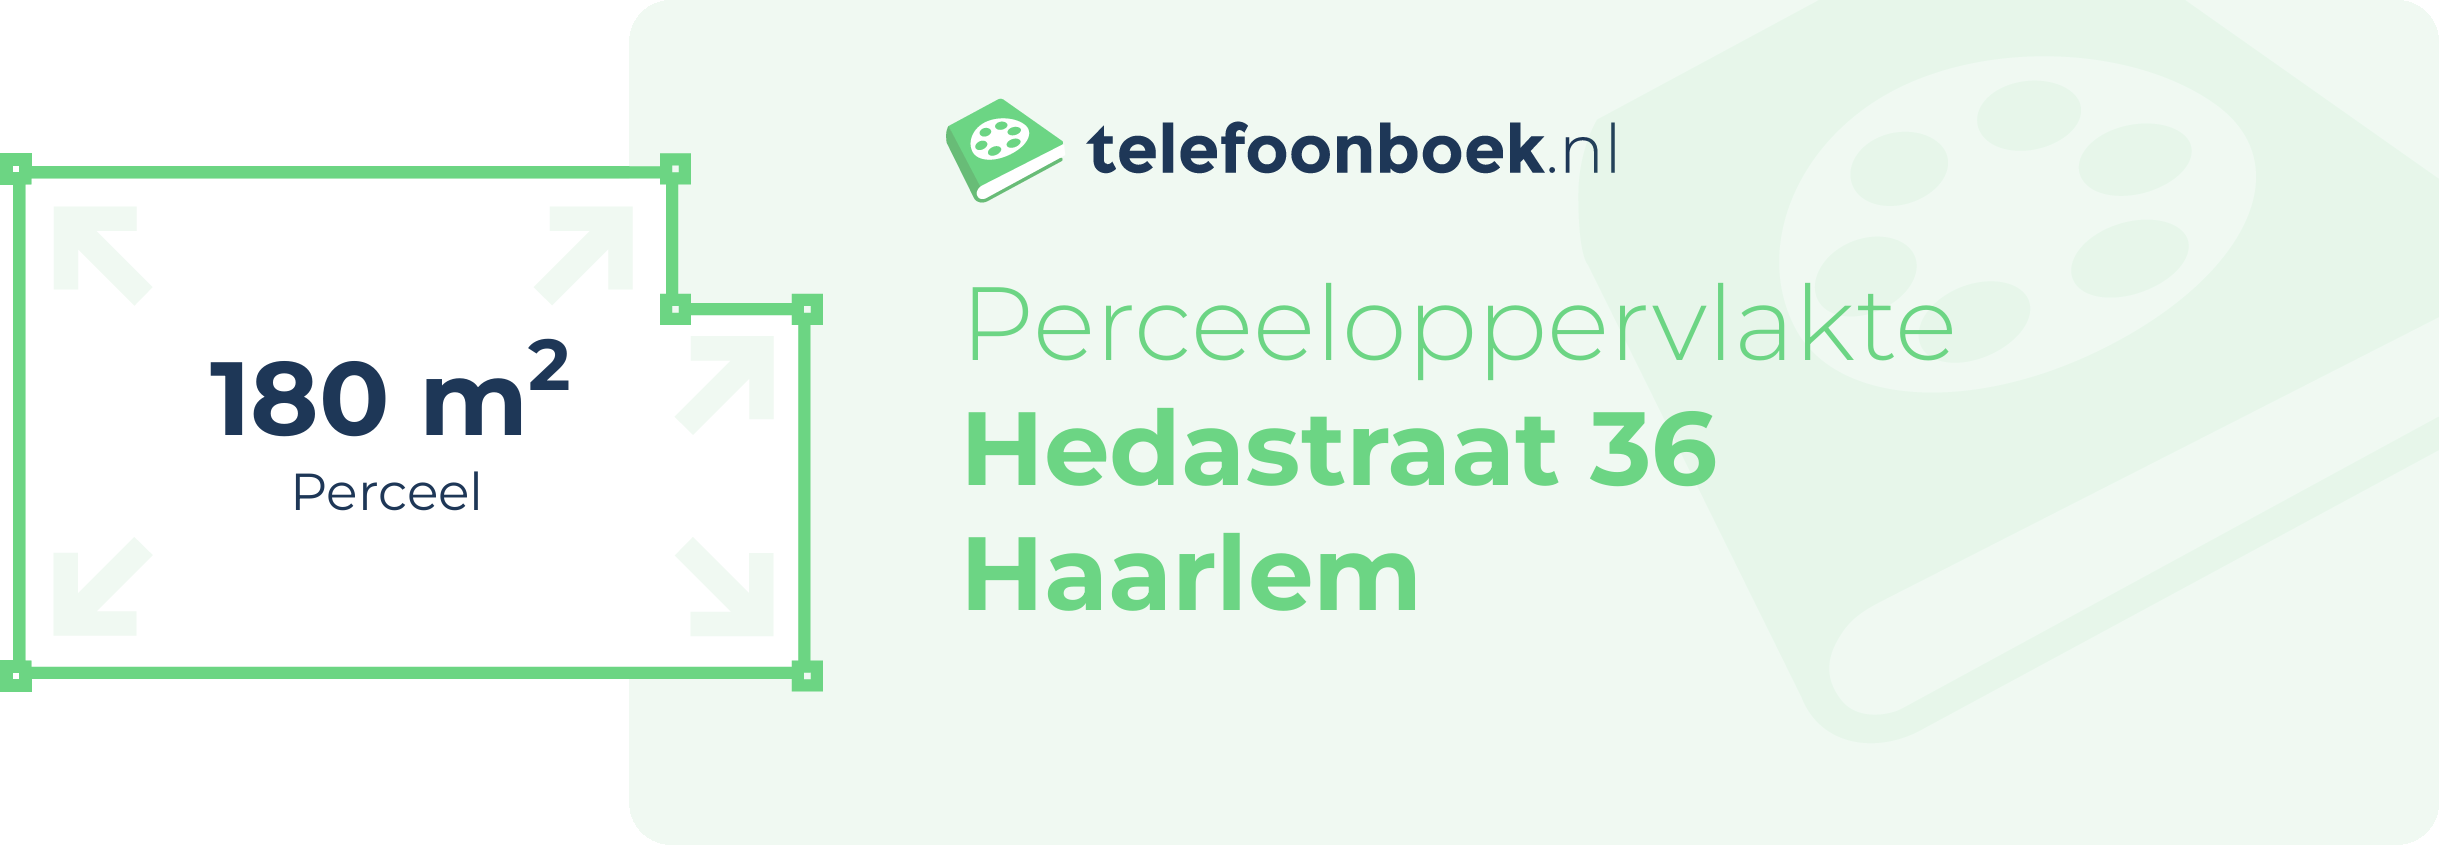 Perceeloppervlakte Hedastraat 36 Haarlem